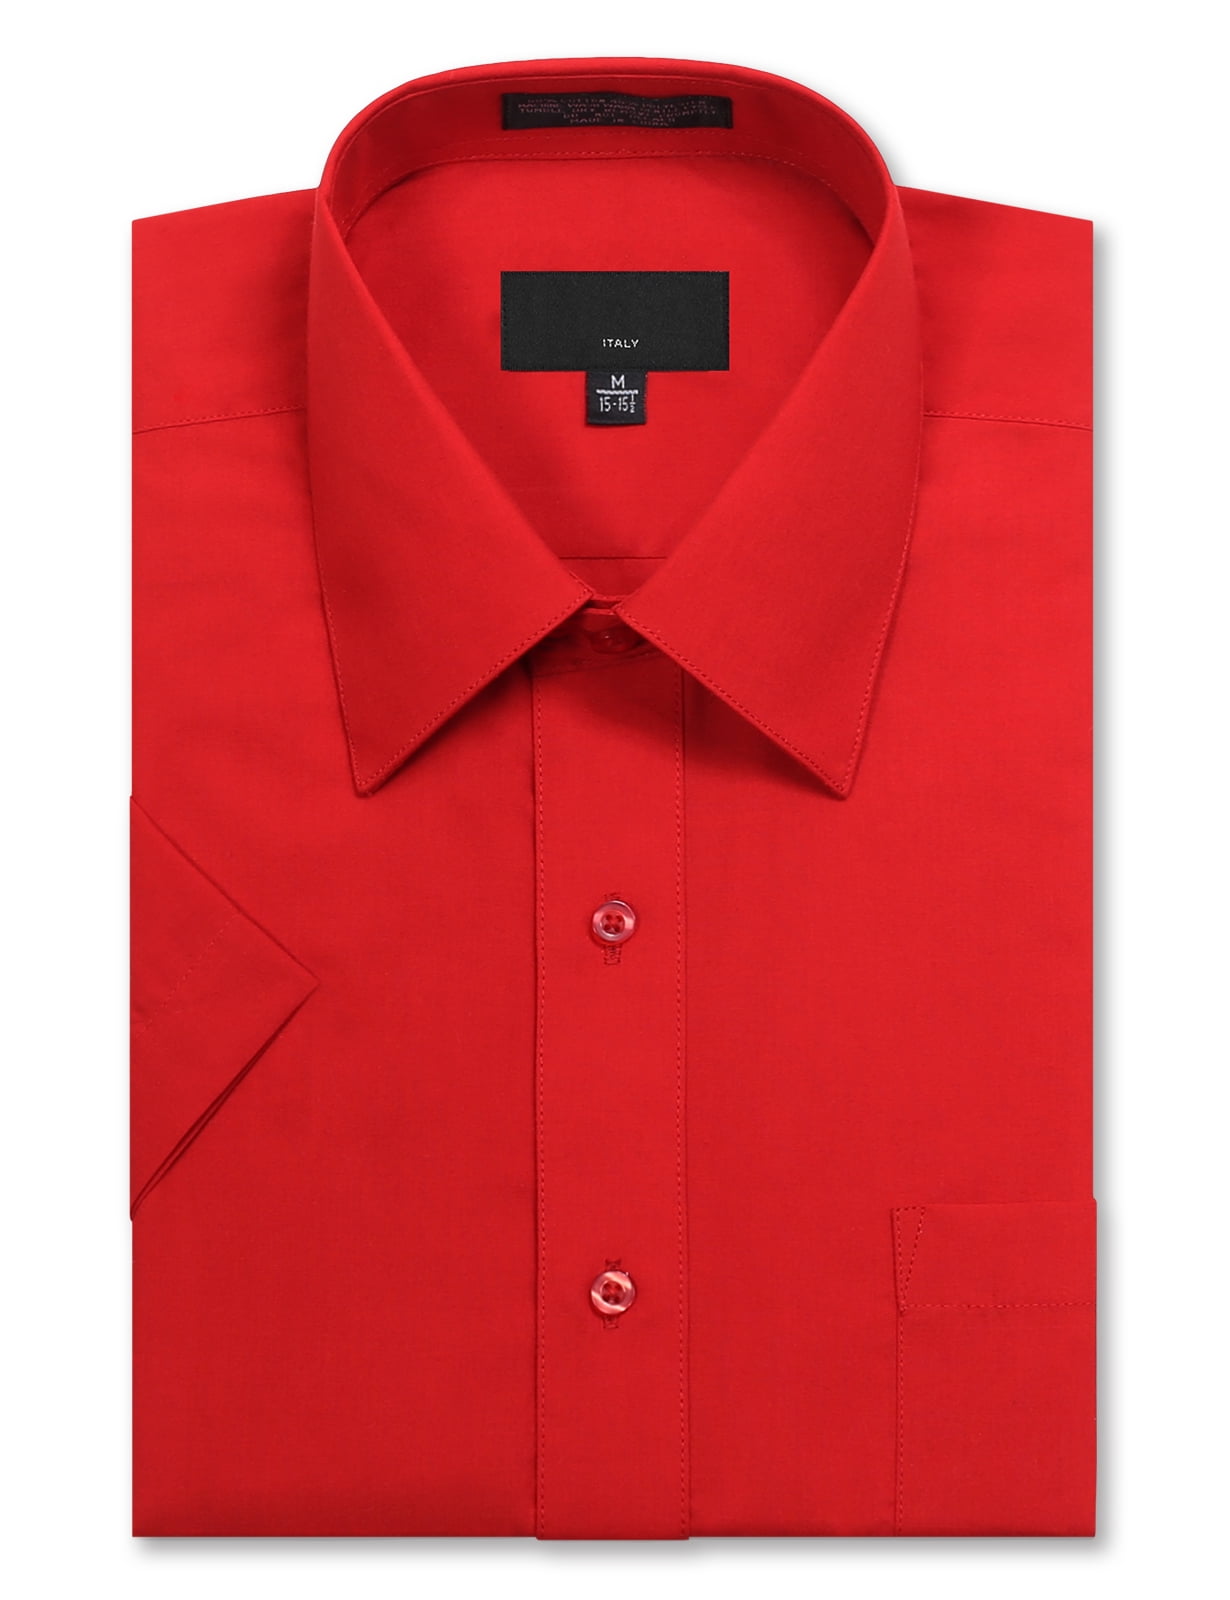 Allsense Men's Regular Fit Short-Sleeve Dress Shirts - Walmart.com